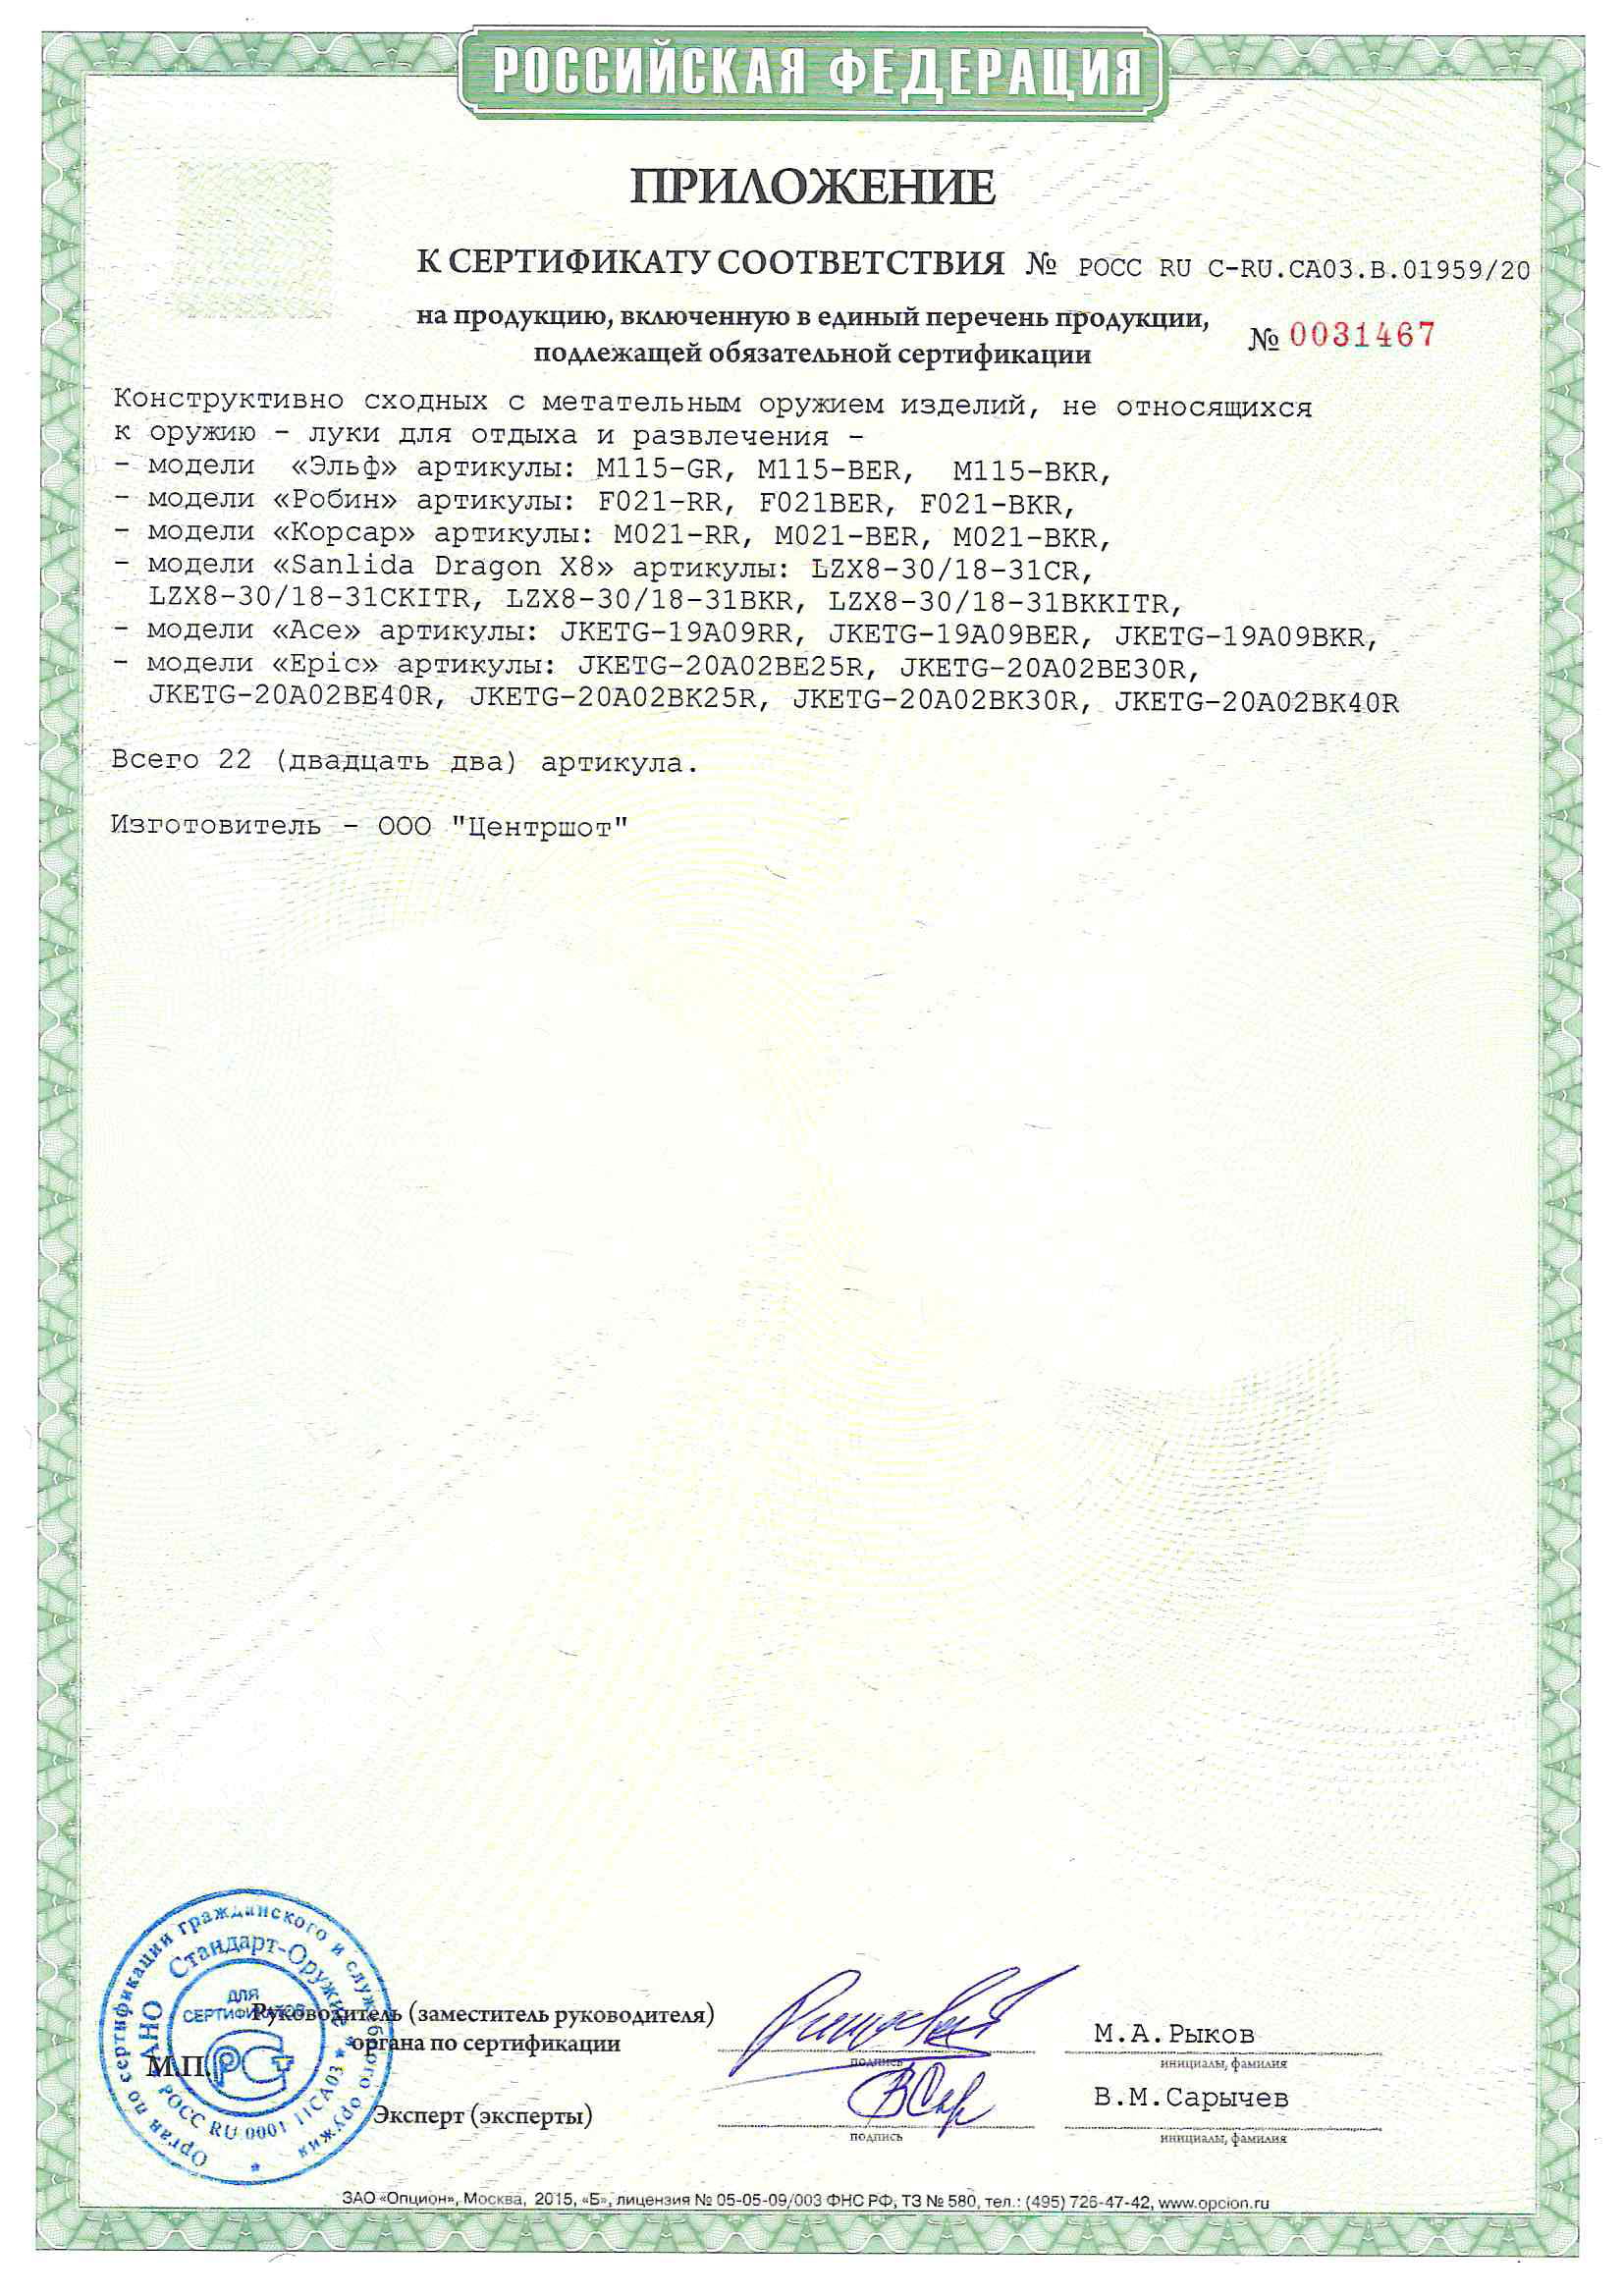 *Сертификат* Лук детский блочный Centershot Корсар красный (с комплектом) Сертификат соответствия №POCC RU C-RU.CA03.B.01959/20 приложение Корсар